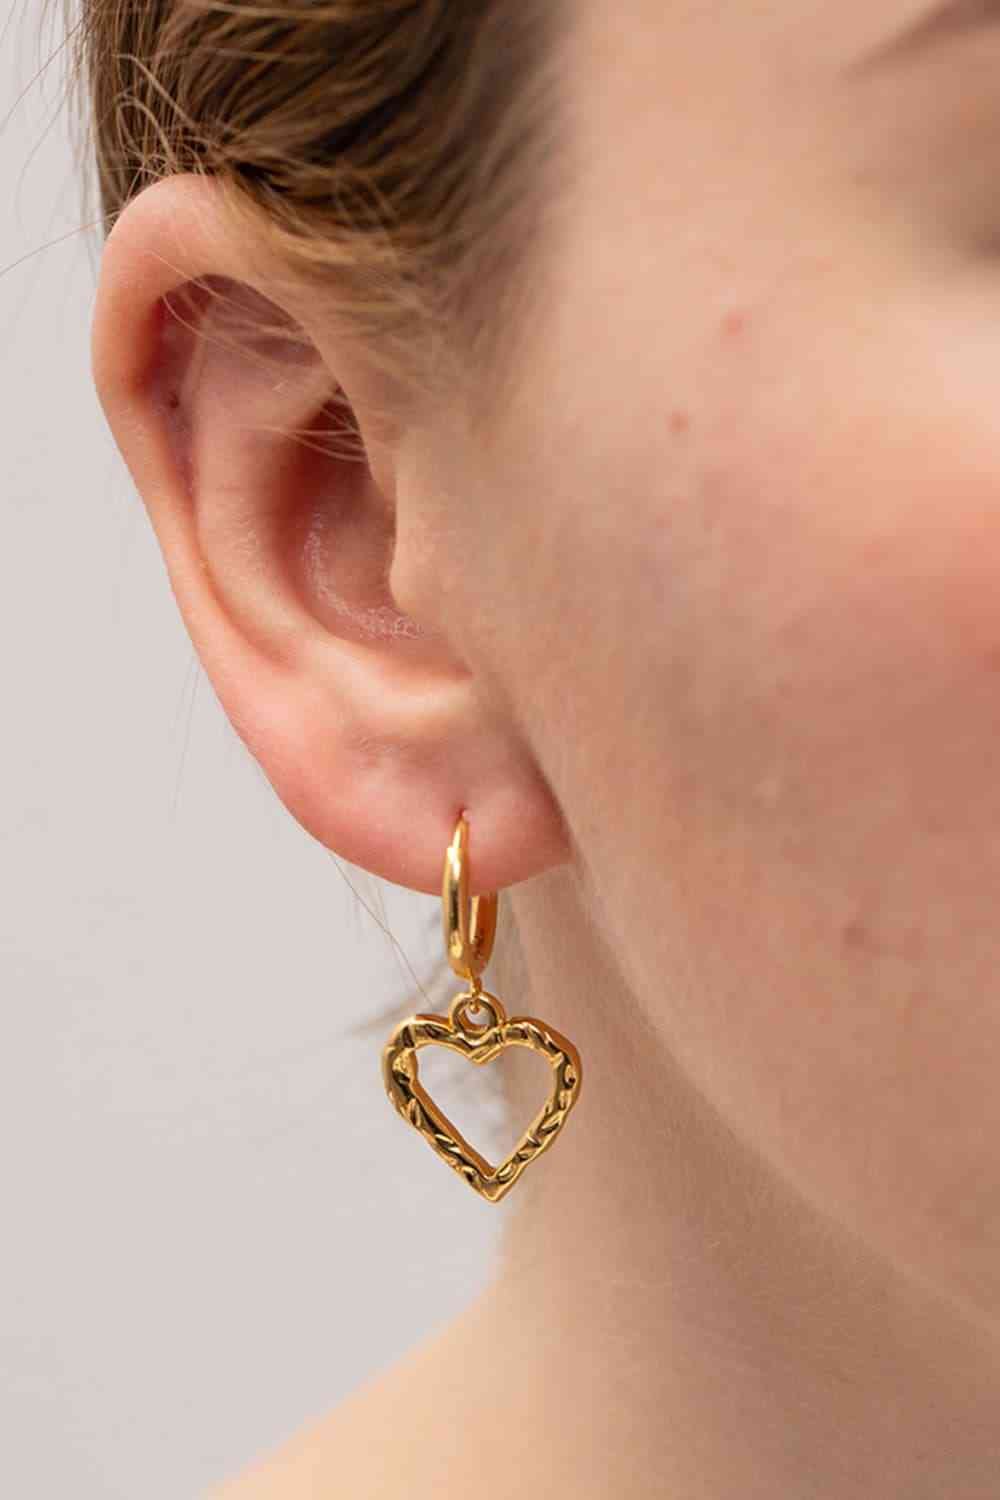 Heart Stainless Steel Drop Earrings - Global Village Kailua Boutique